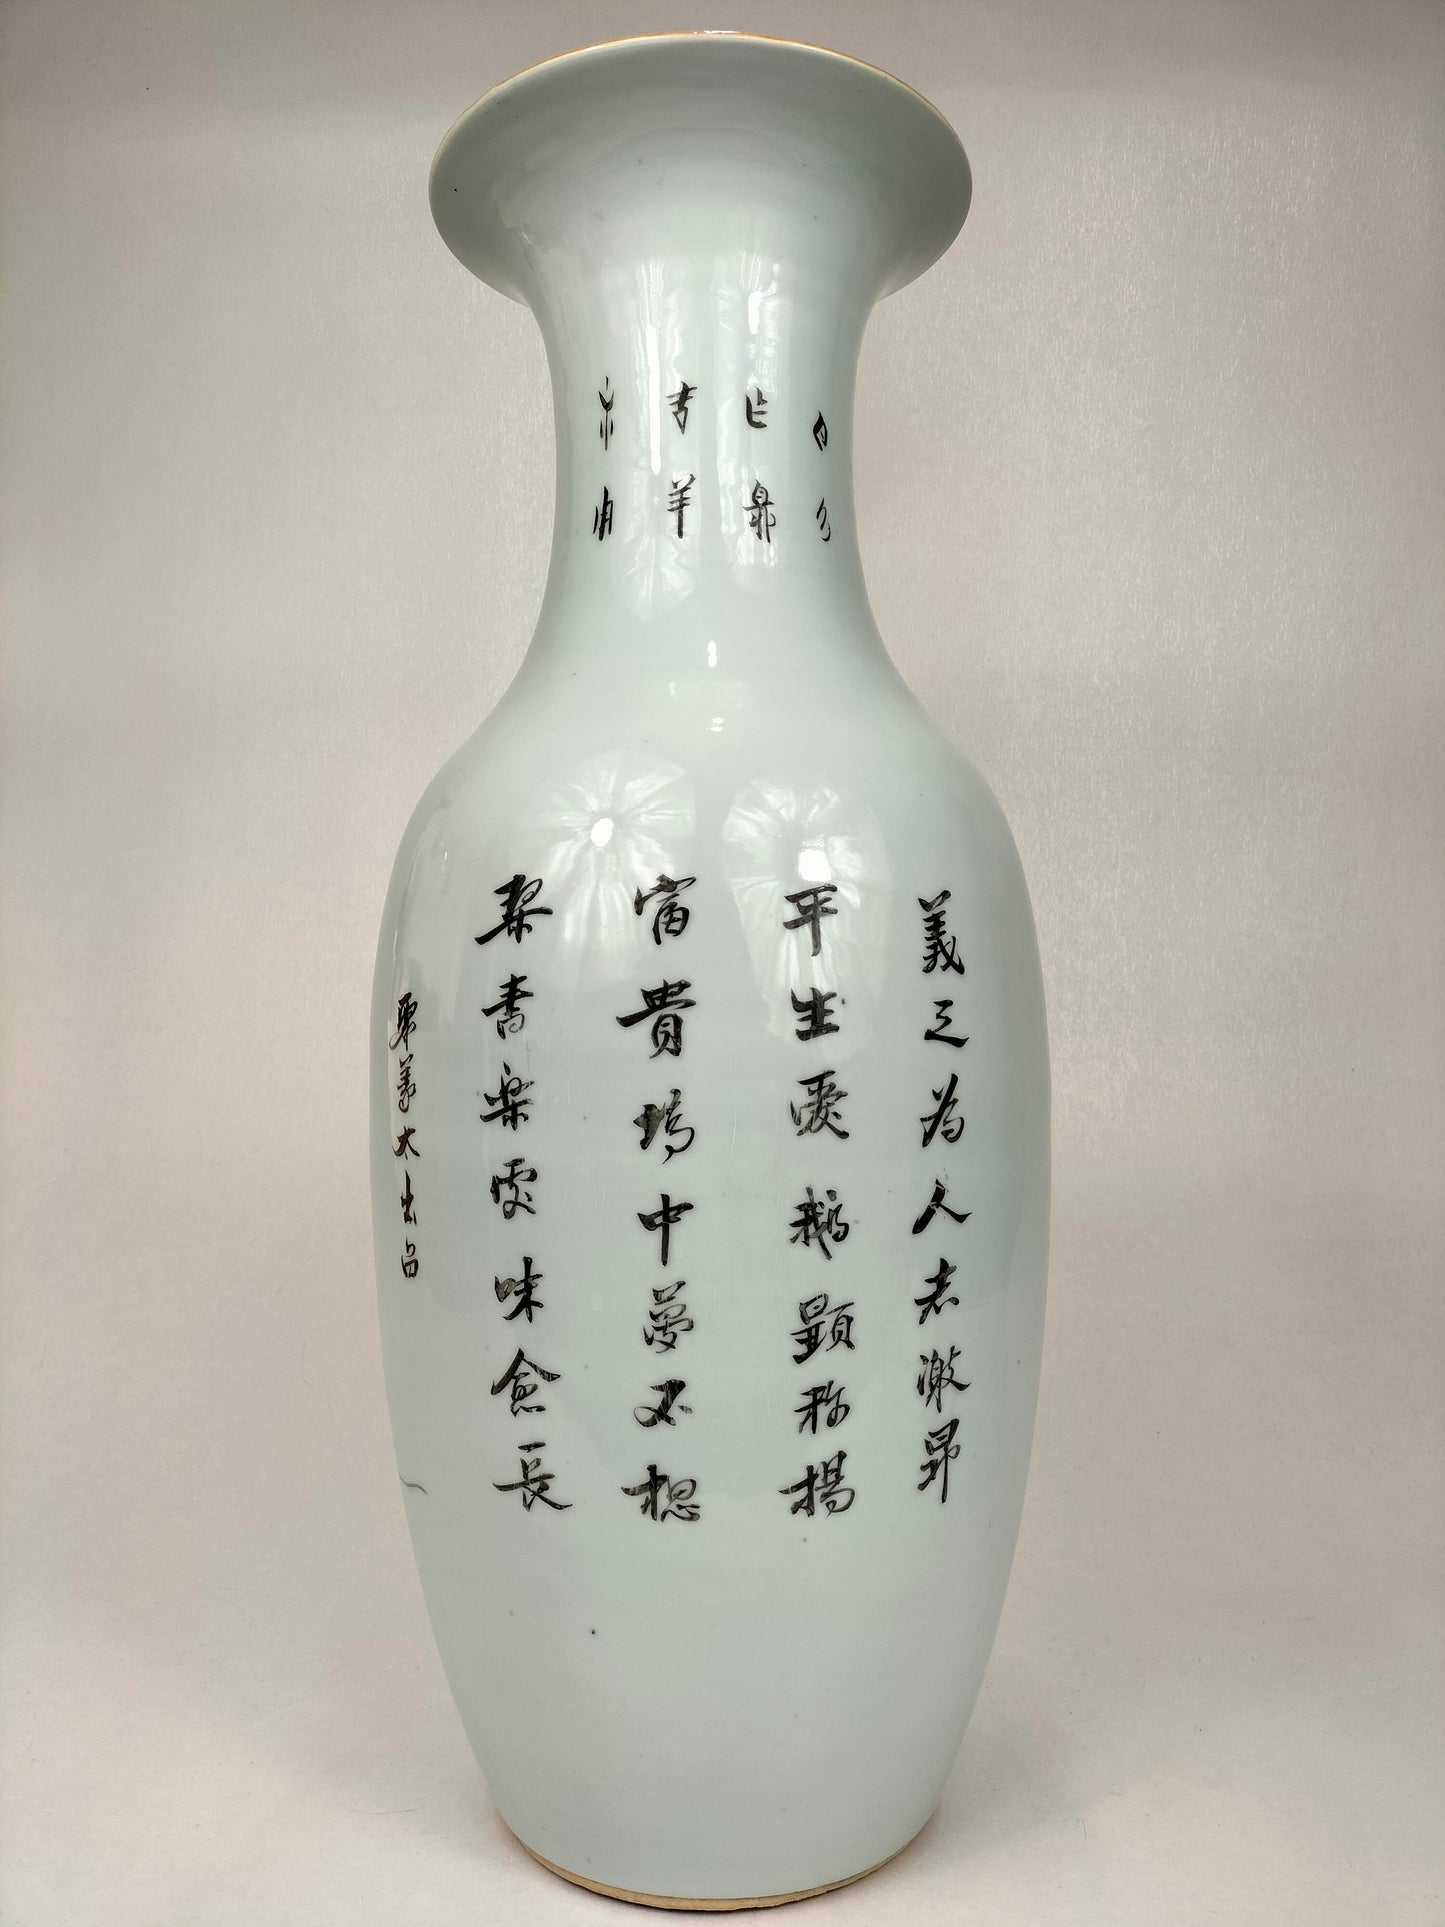 Grande vaso chinês antigo decorado com sábios e crianças // Período da República (1912-1949)